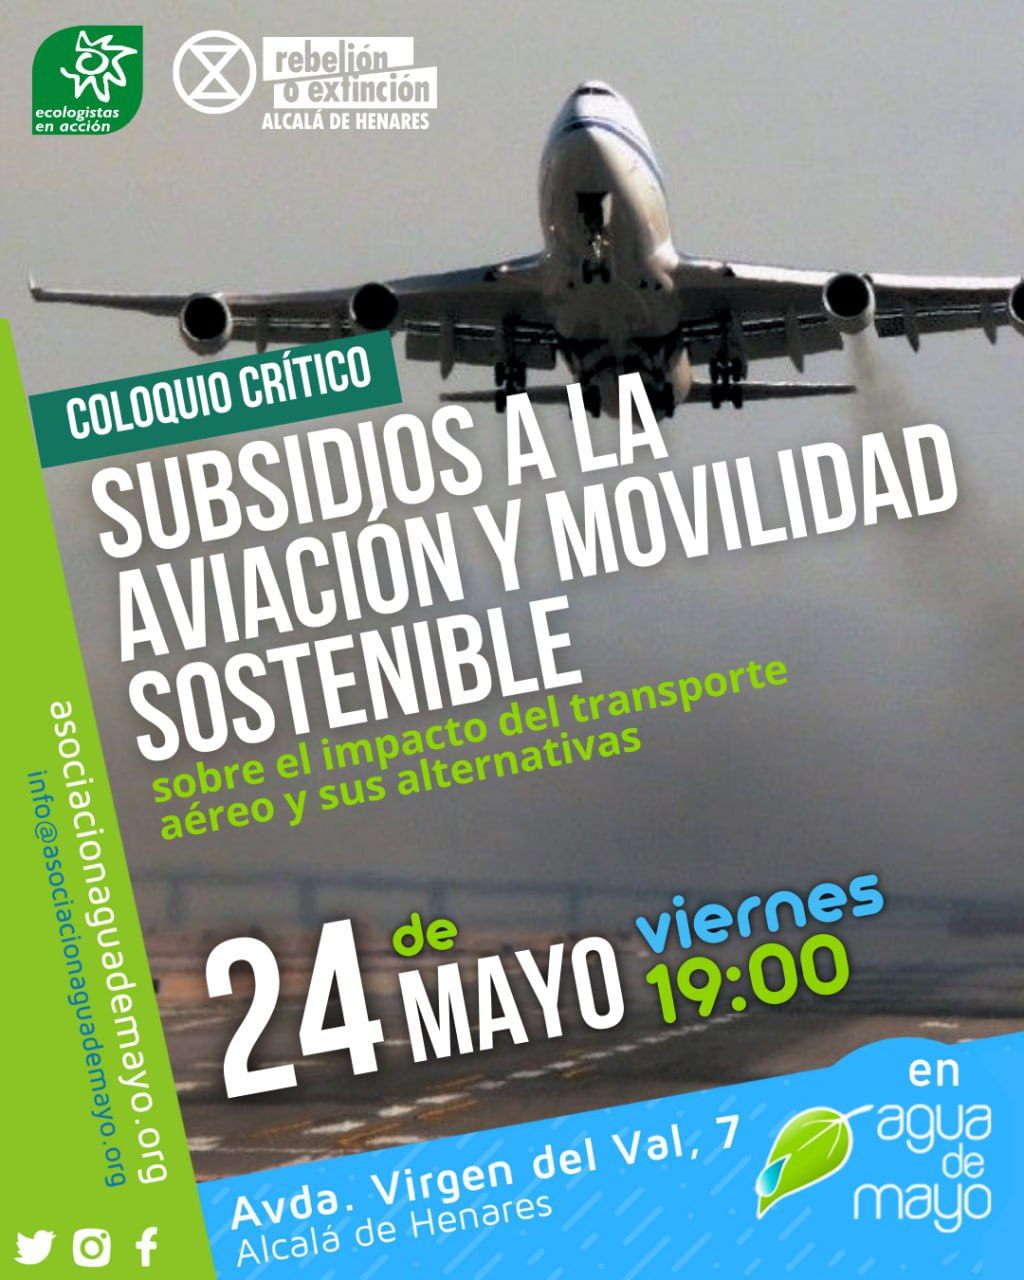 Coloquio Crítico: Subsidios a la aviación y movilidad sostenible. El viernes 24 de mayo a las 19 horas en la Asociación Agua de Mayo en la Avenida Virgen del Val número 7, Alcalá de Henares